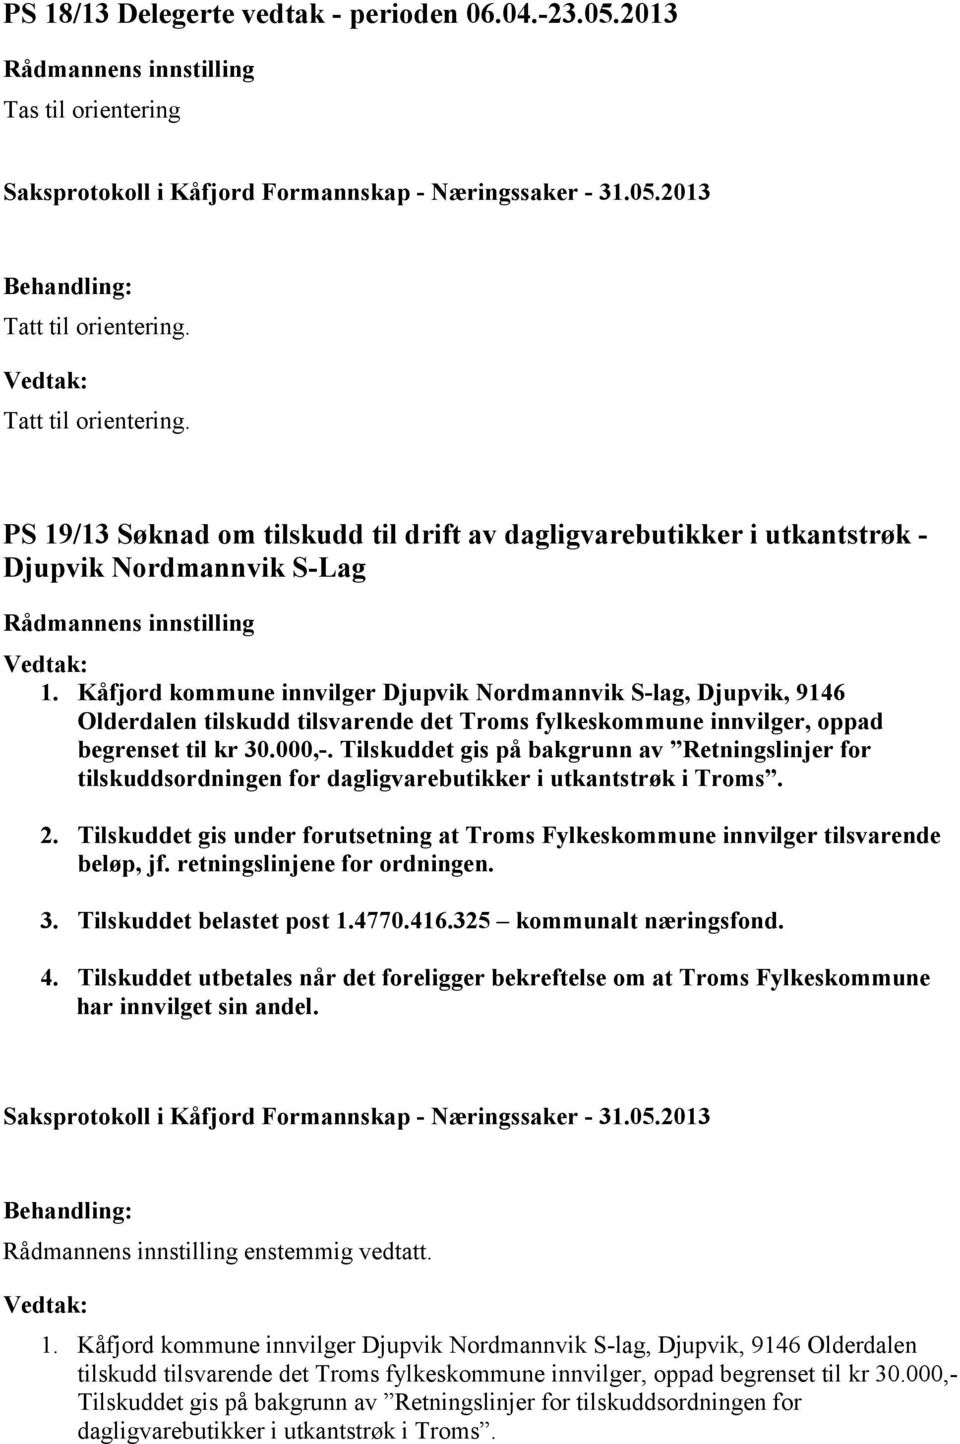 Kåfjord kommune innvilger Djupvik Nordmannvik S-lag, Djupvik, 9146 Olderdalen tilskudd tilsvarende det Troms fylkeskommune innvilger, oppad begrenset til kr 30.000,-.